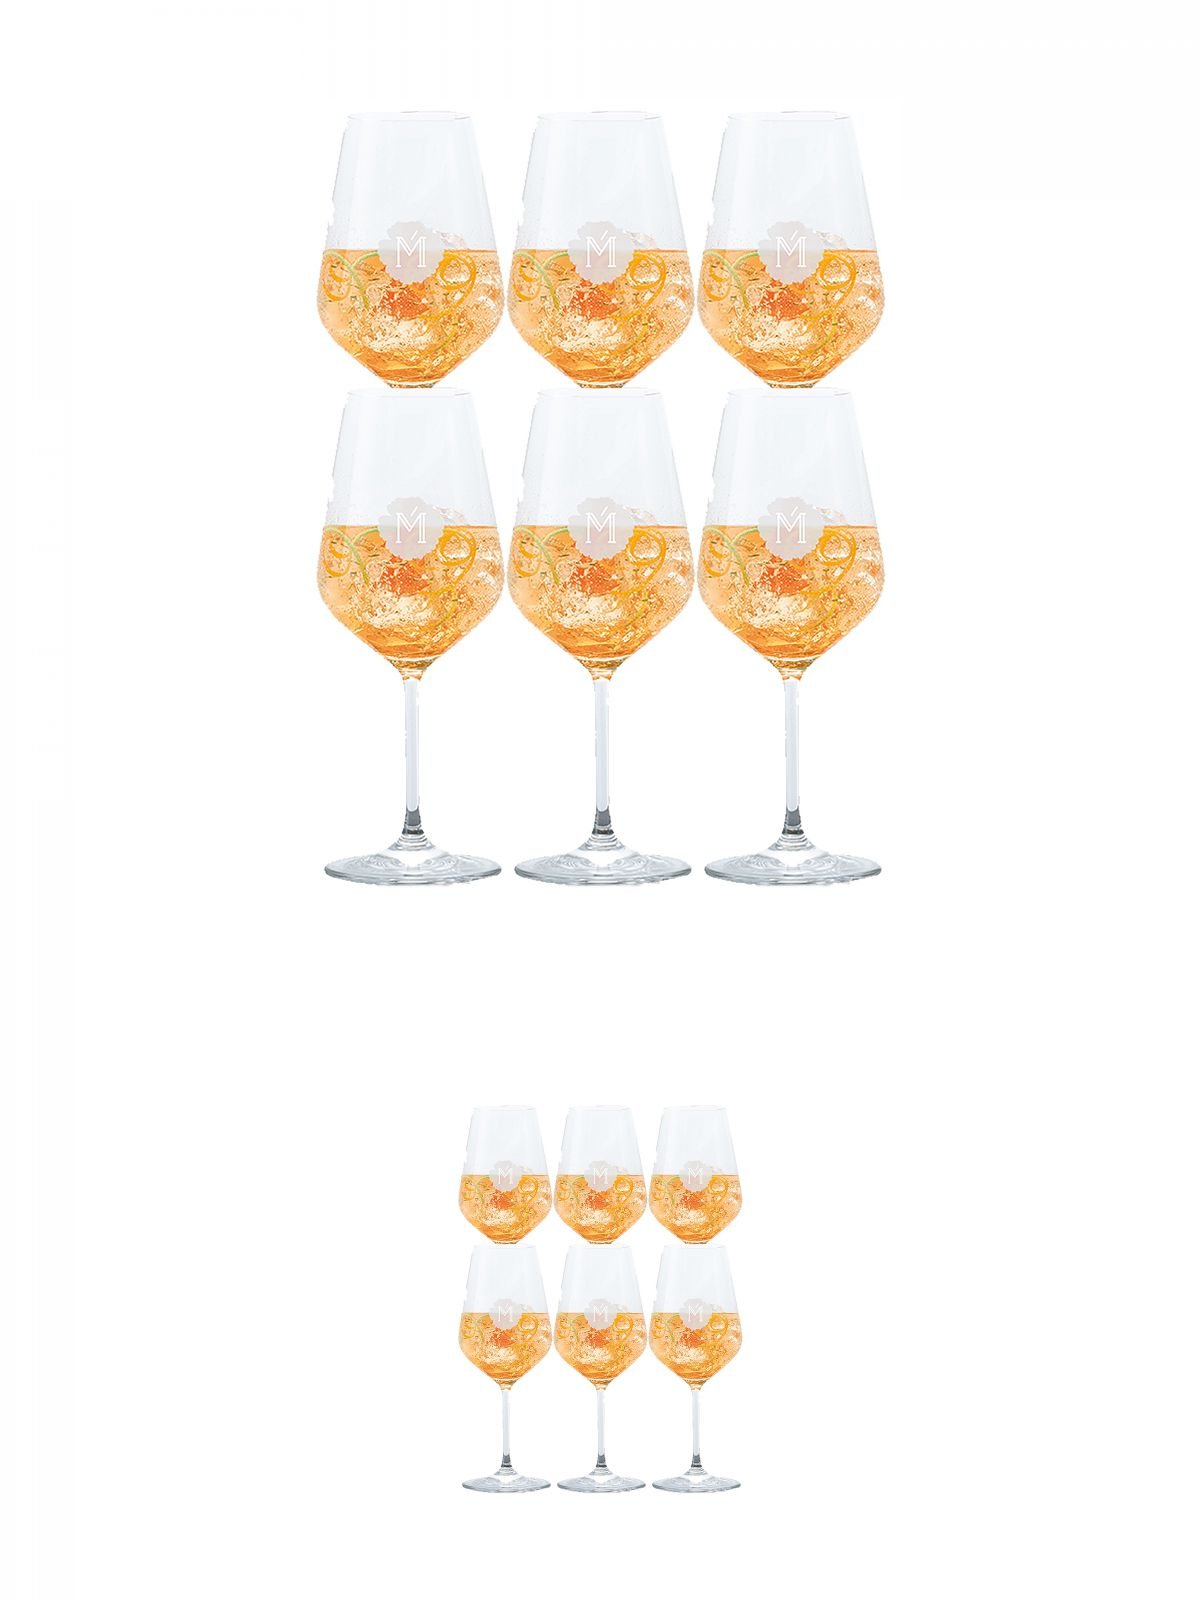 Miamee Goldwasser Cocktail Gläser mit 5cl Eichstrich 6 Stück + Miamee Goldwasser Cocktail Gläser mit 5cl Eichstrich 6 Stück